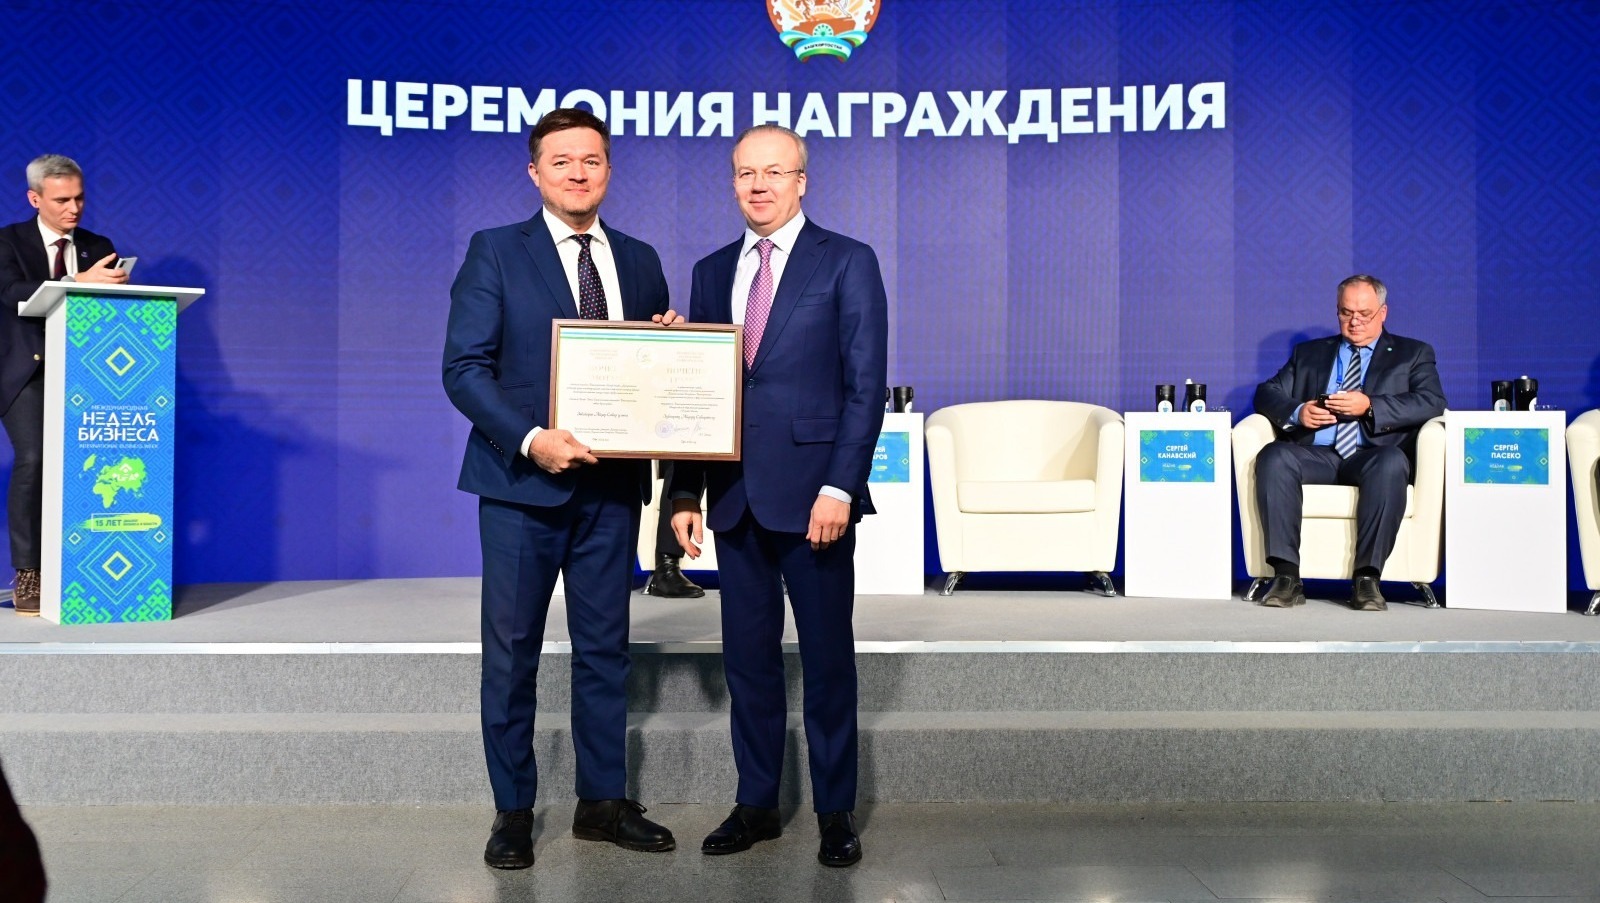 Андрей Назаров вручил награды за вклад в улучшение инвестклимата и экономики Республики Башкортостан